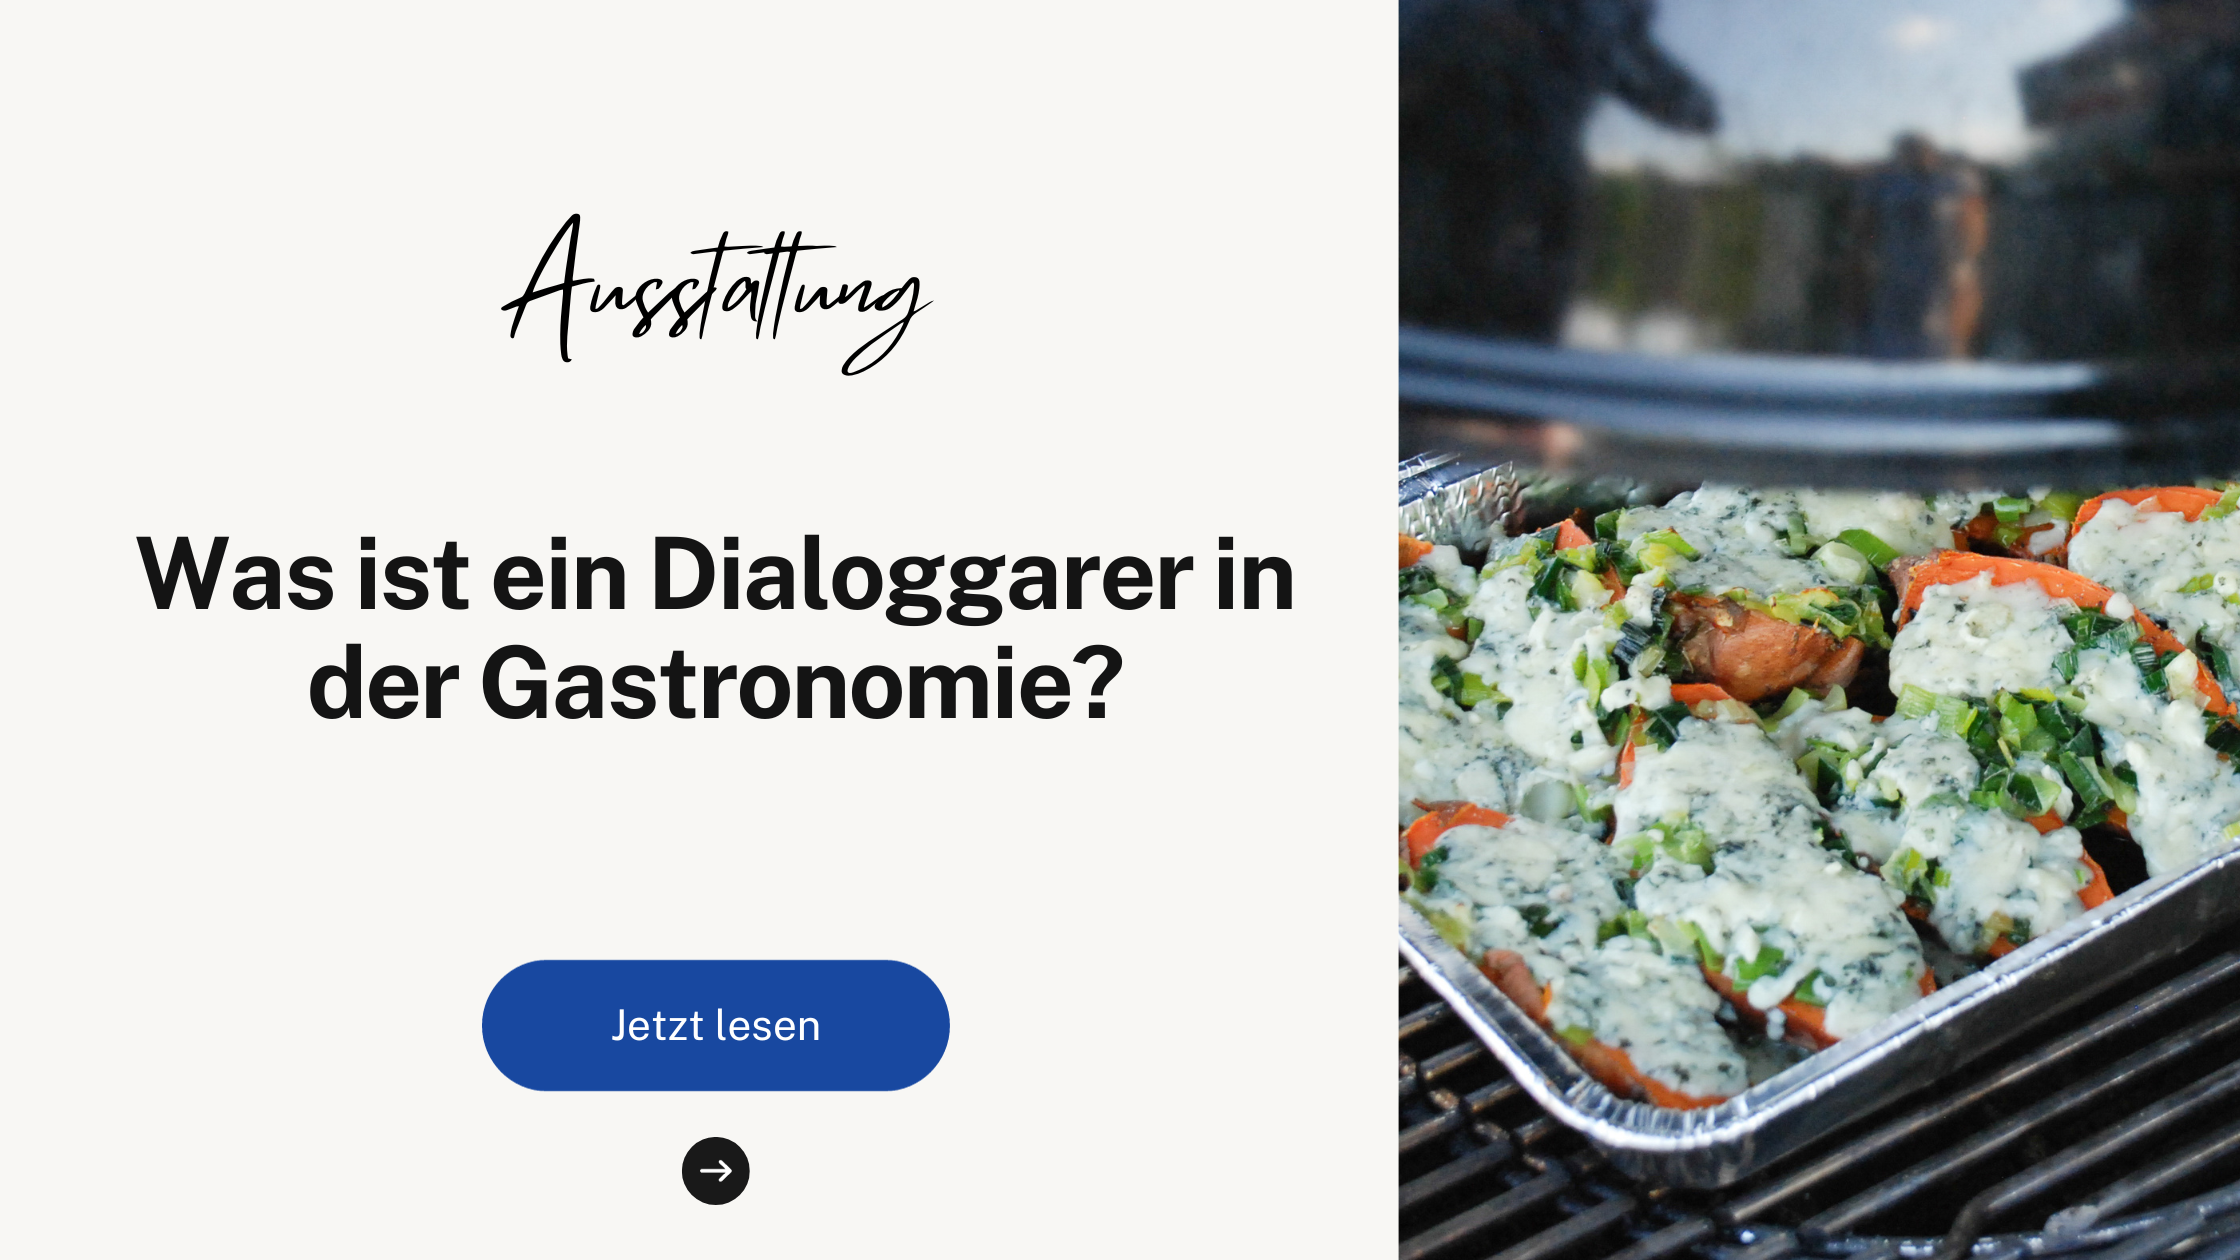 Was ist ein Dialoggarer in der Gastronomie?